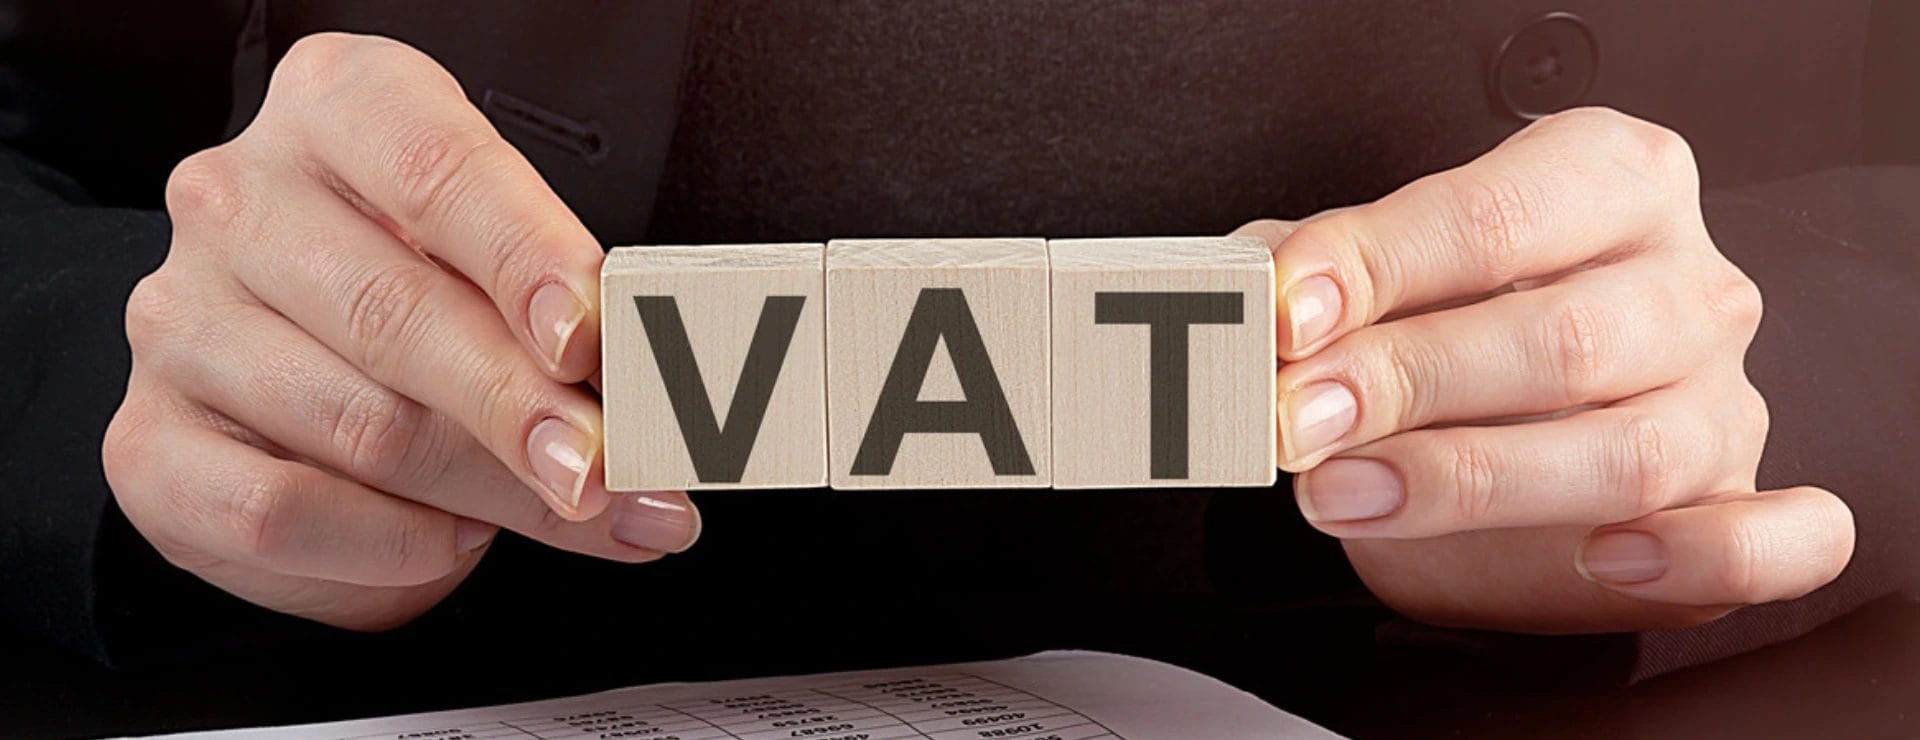 VAT will Impact Businesses in UAE